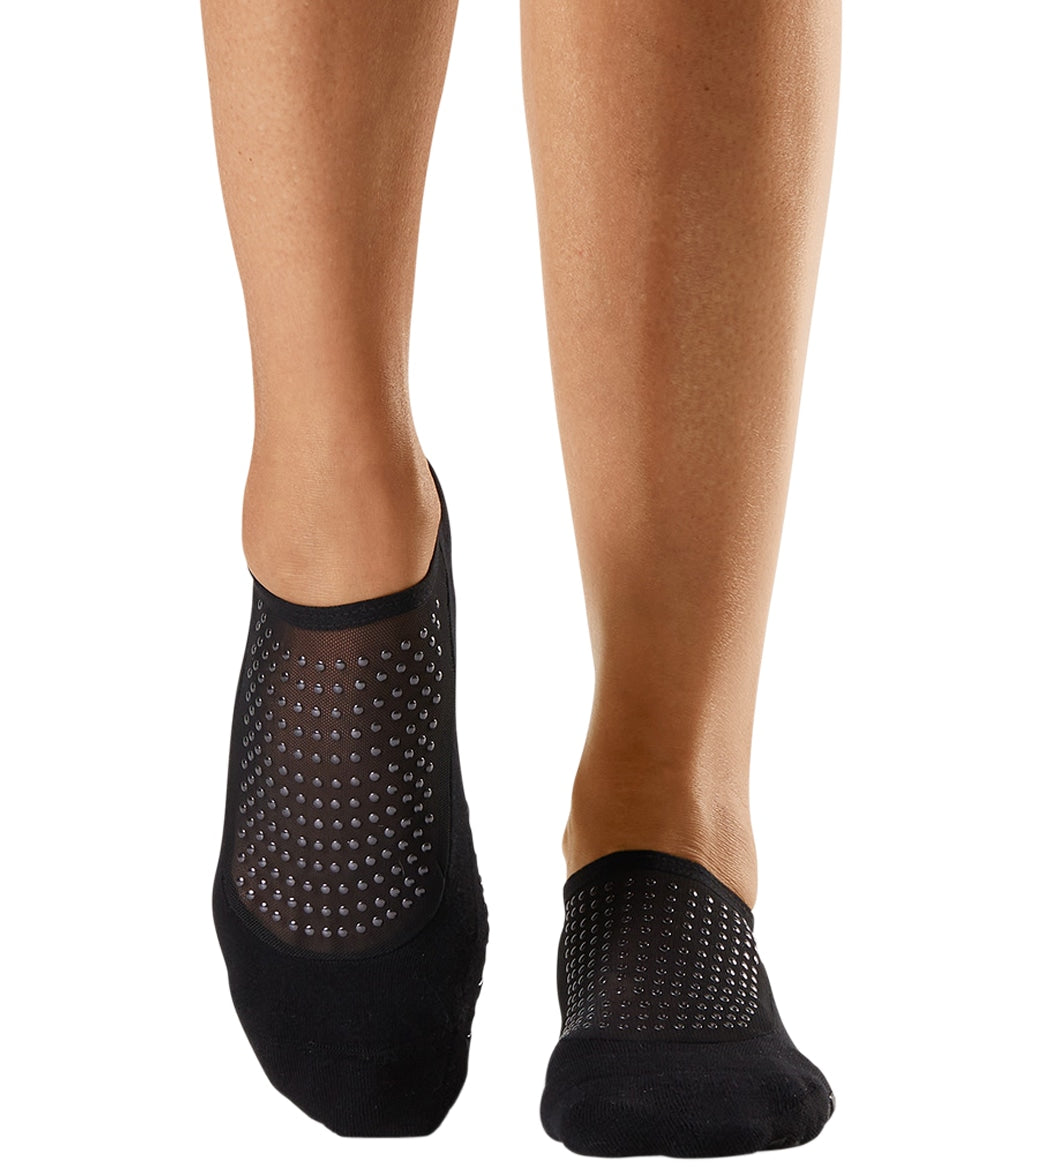 Tavi Emma Grip Socks at YogaOutlet.com –